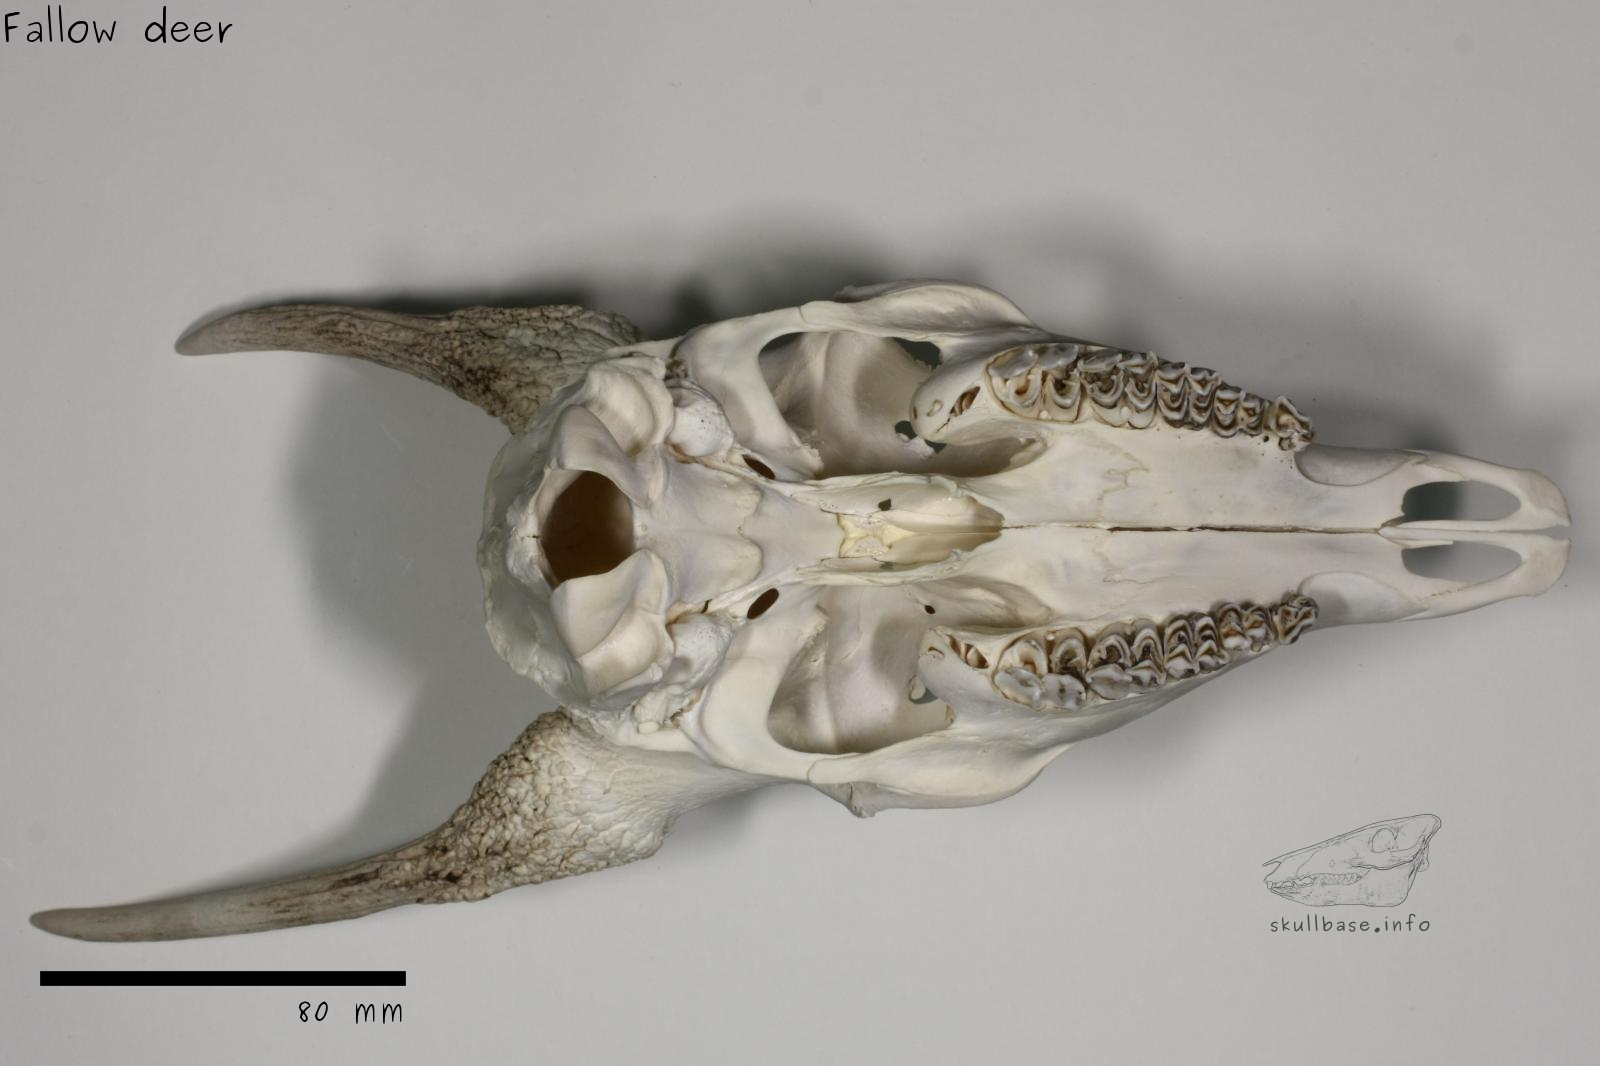 Fallow deer (Dama dama) skull ventral view